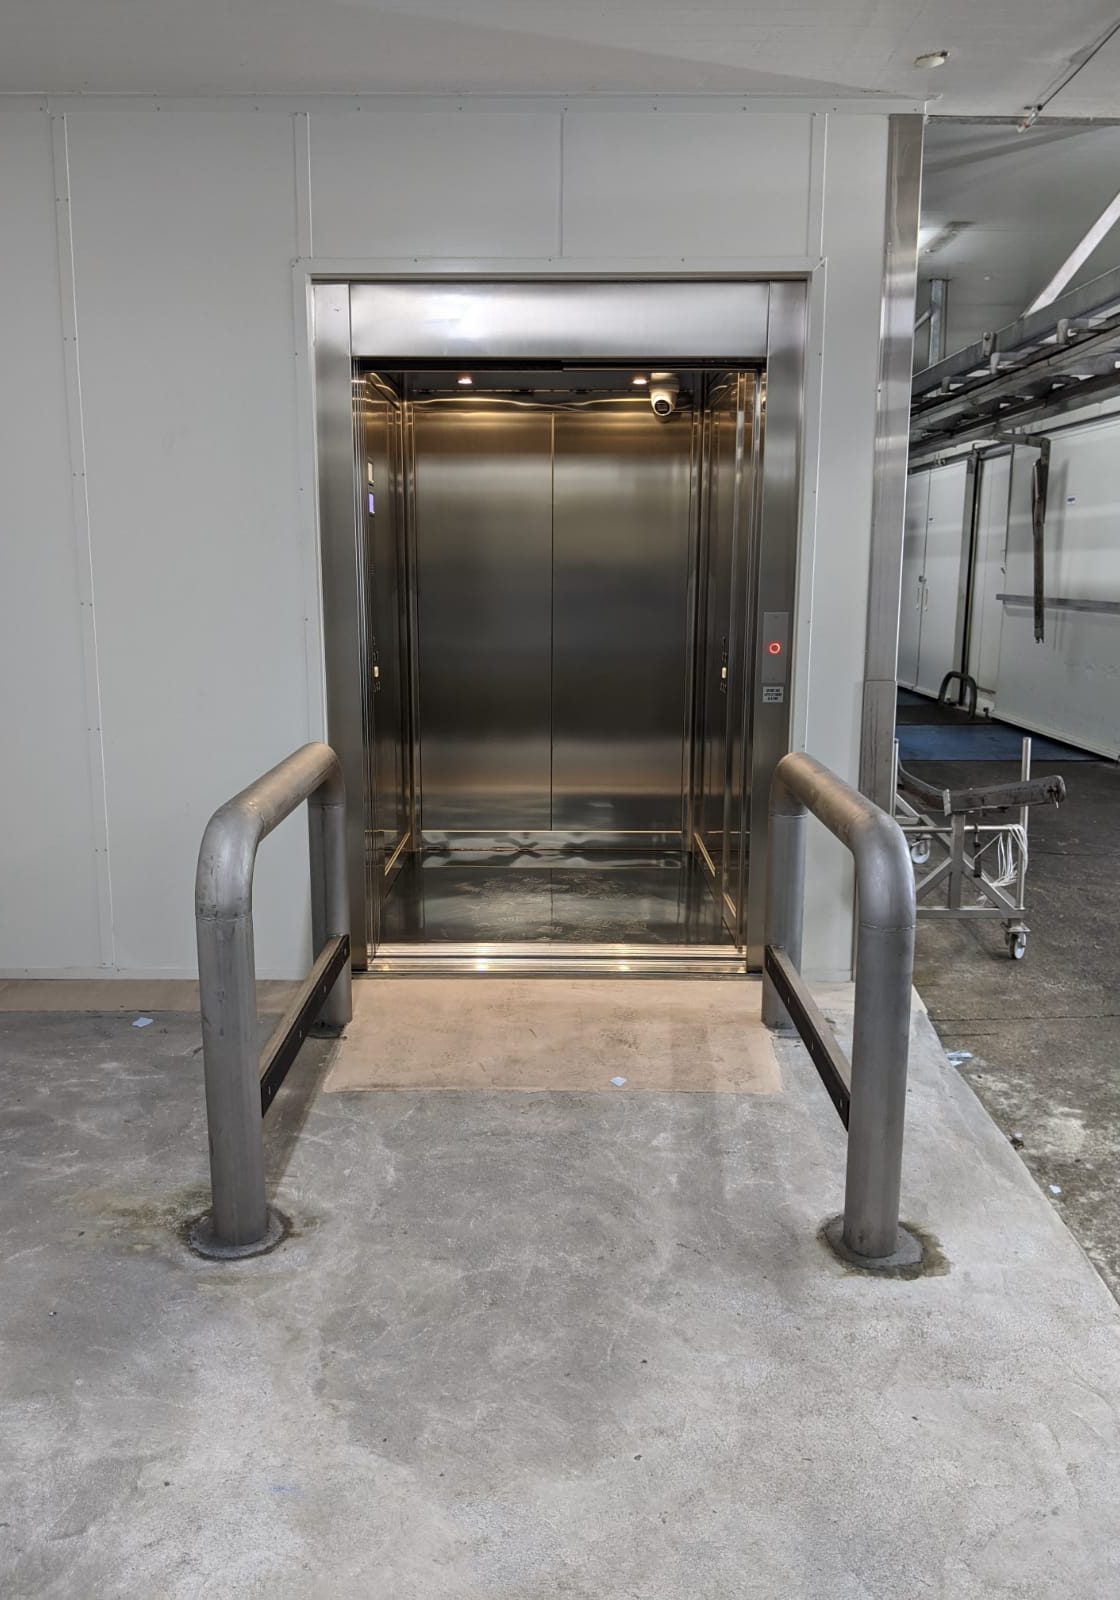 Steel doors of a Maxi commercial lift